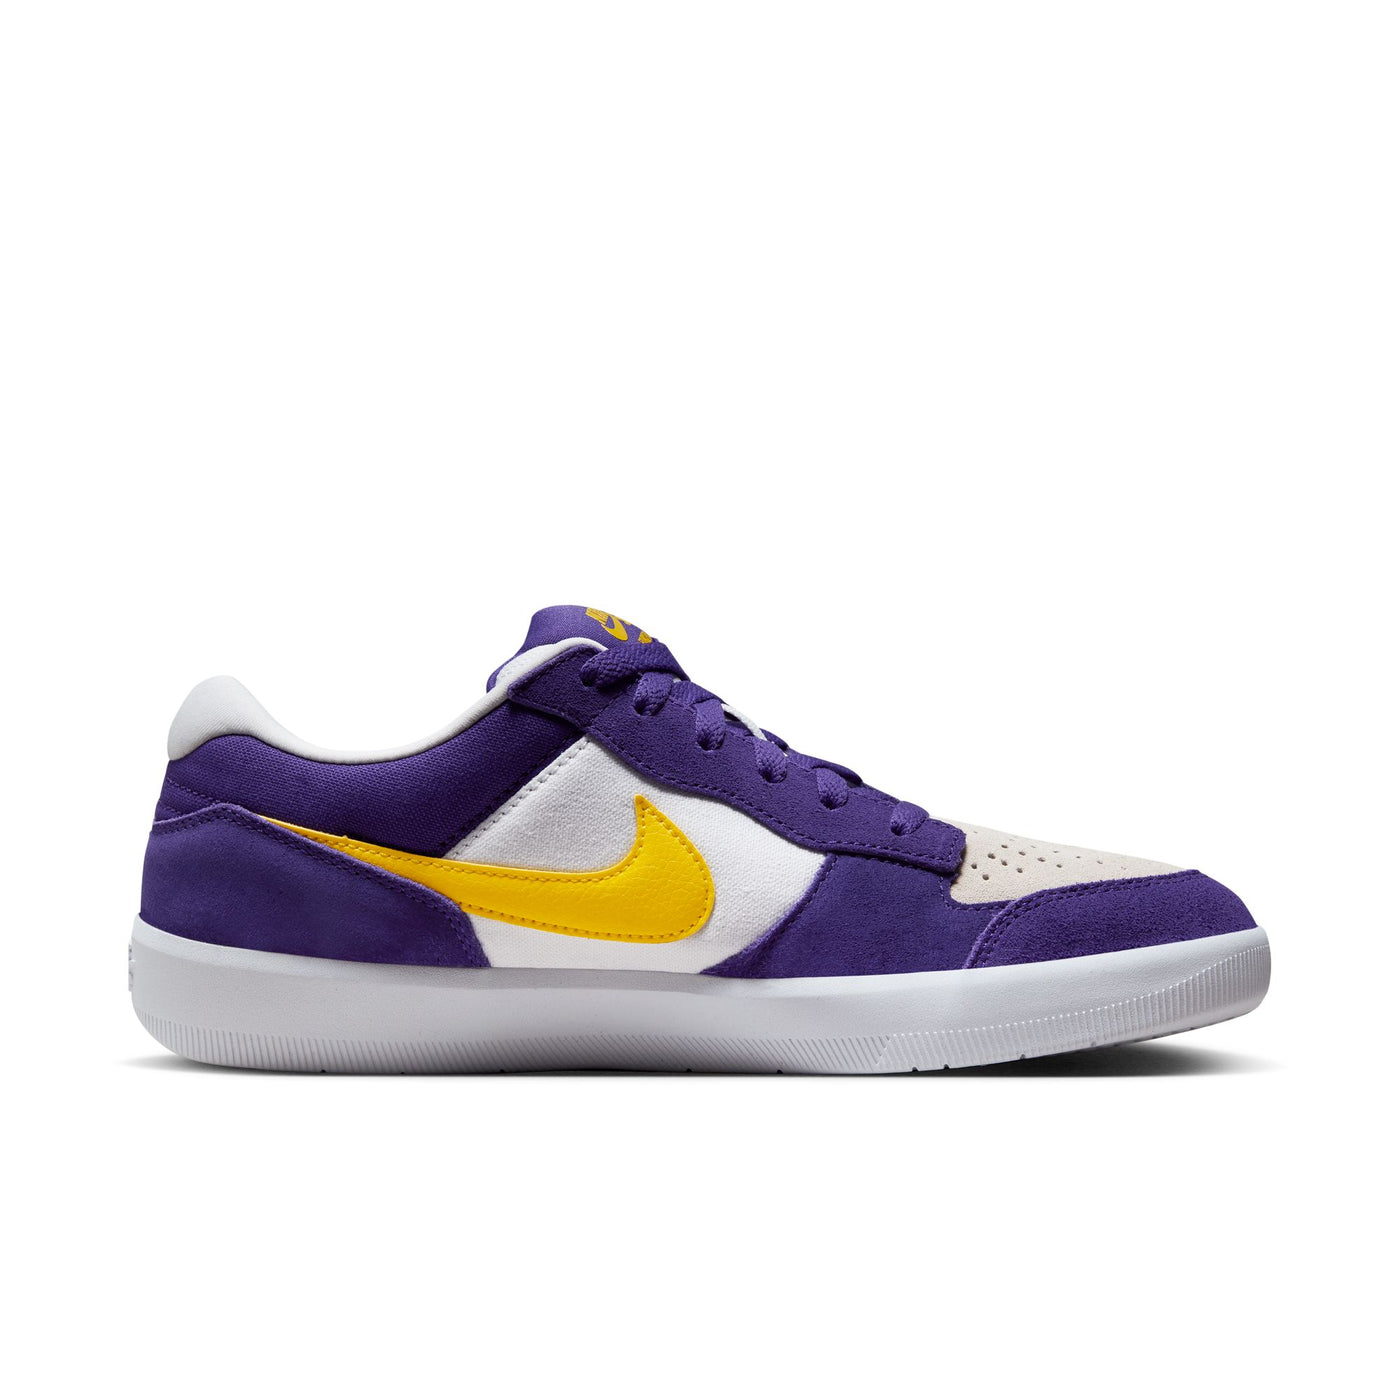 Nike SB 5477 Force 58 - DV5477 - 500 - Purple / White / Yellow